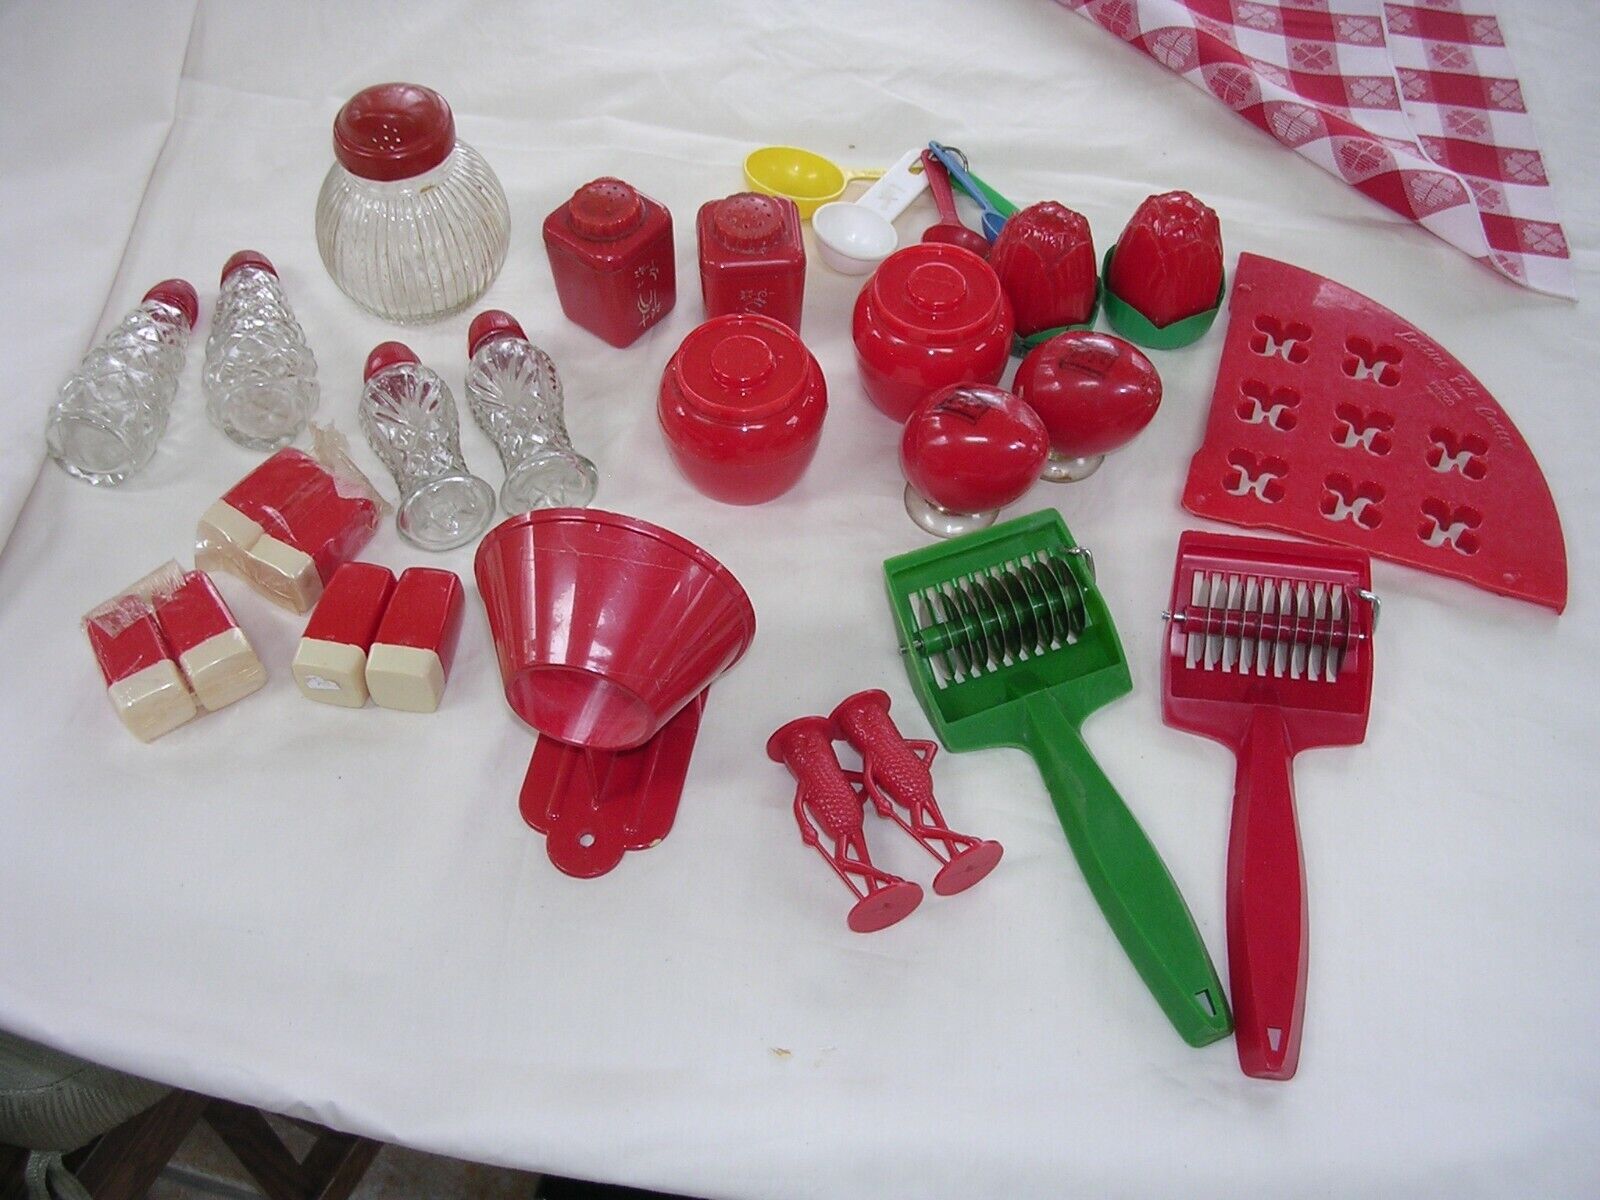 VINTAGE Red mid century 1950s kitsch plastic KITCHEN ITEMS LUSTRO etc Без бренда - фотография #4